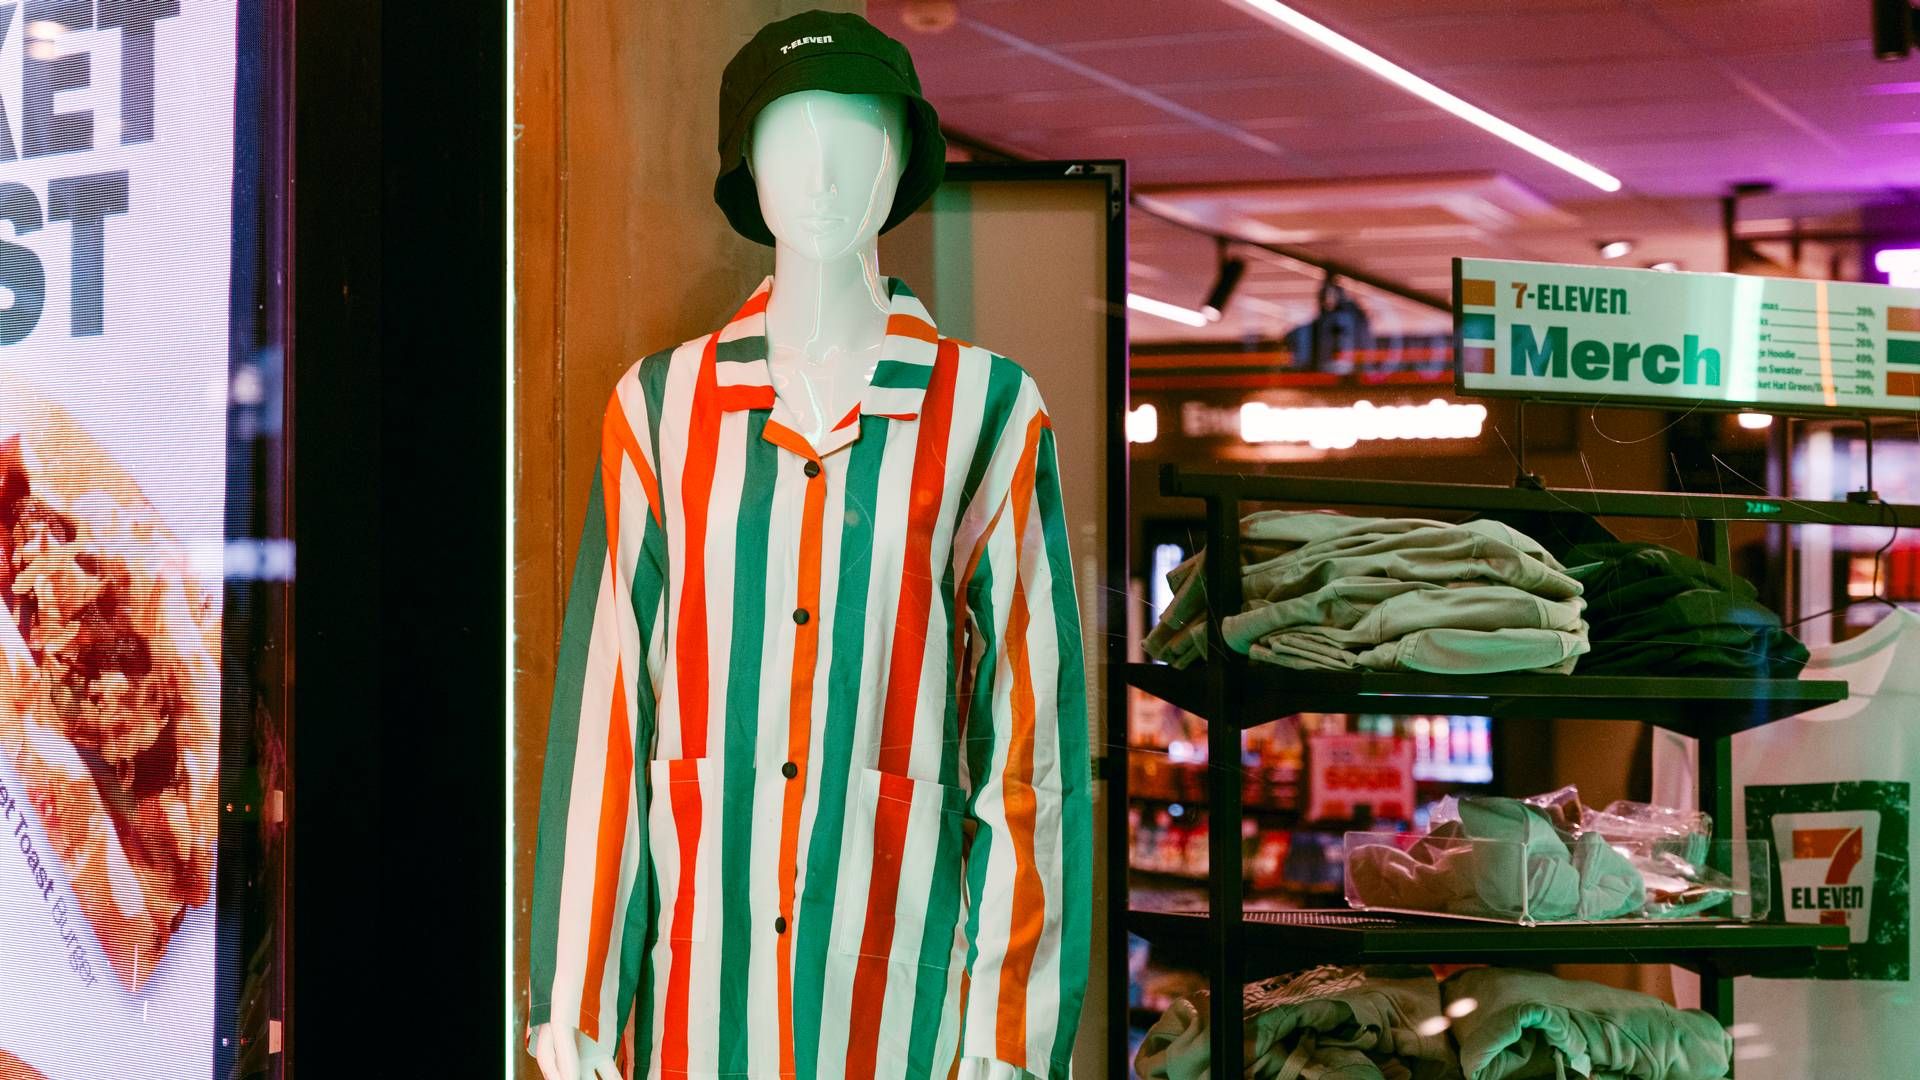 SUKSESS: Salget av klær på 7-Eleven har vært over forventning. | Foto: Reitan Convenience